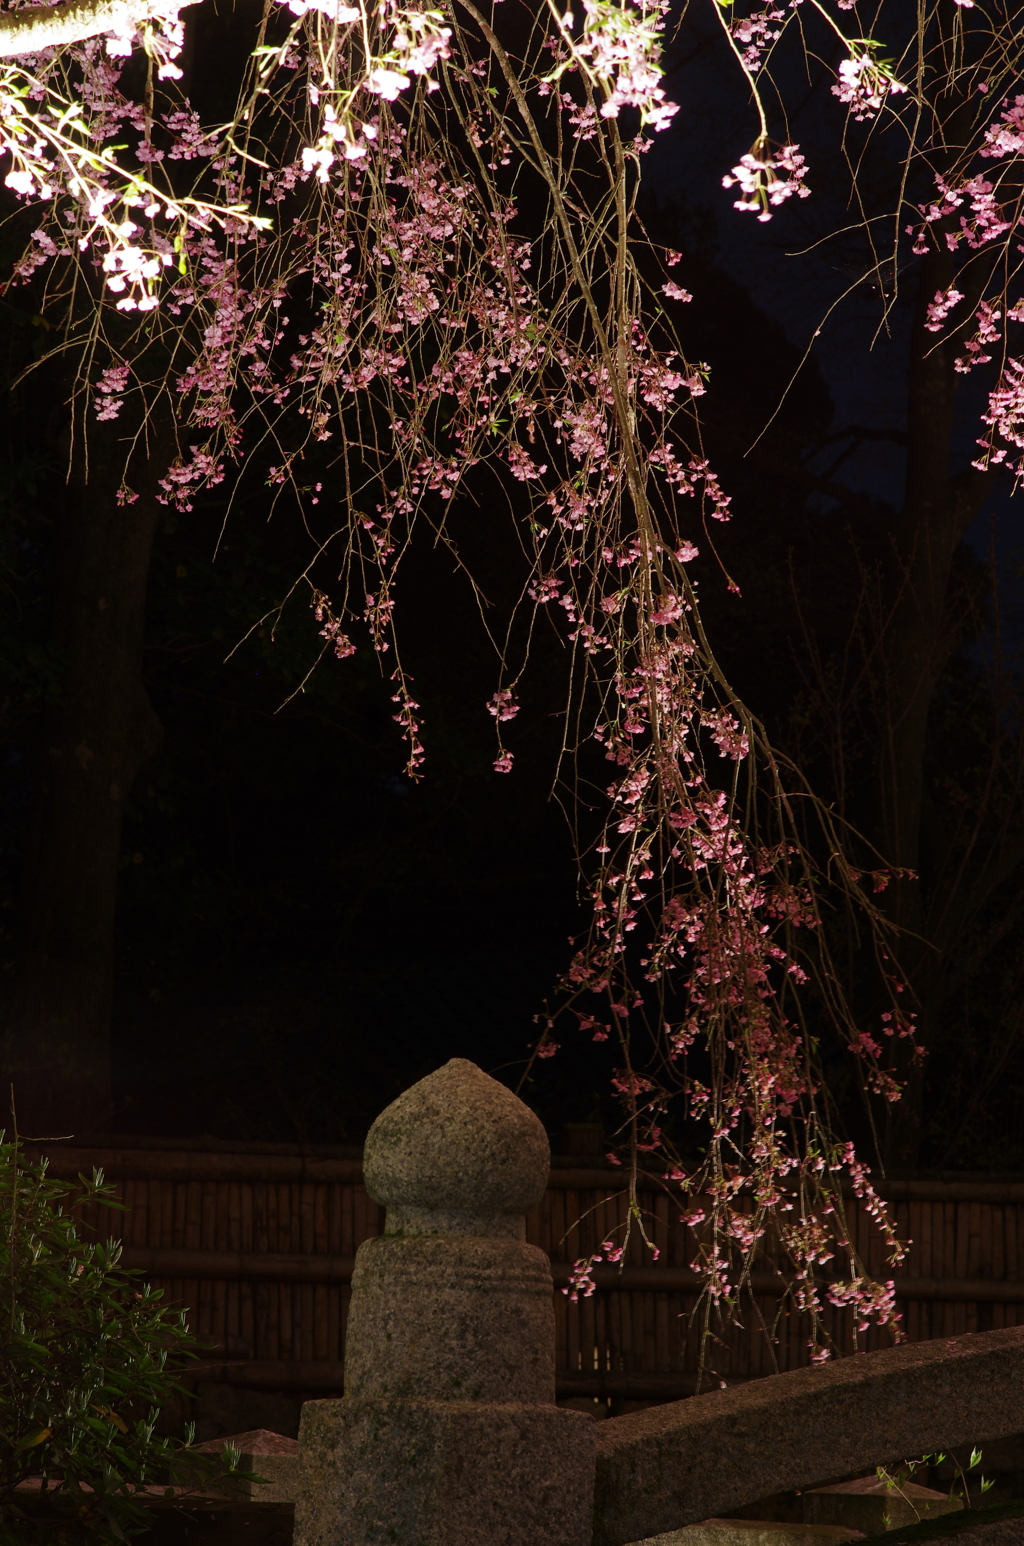 三井寺(圓城寺)の夜桜